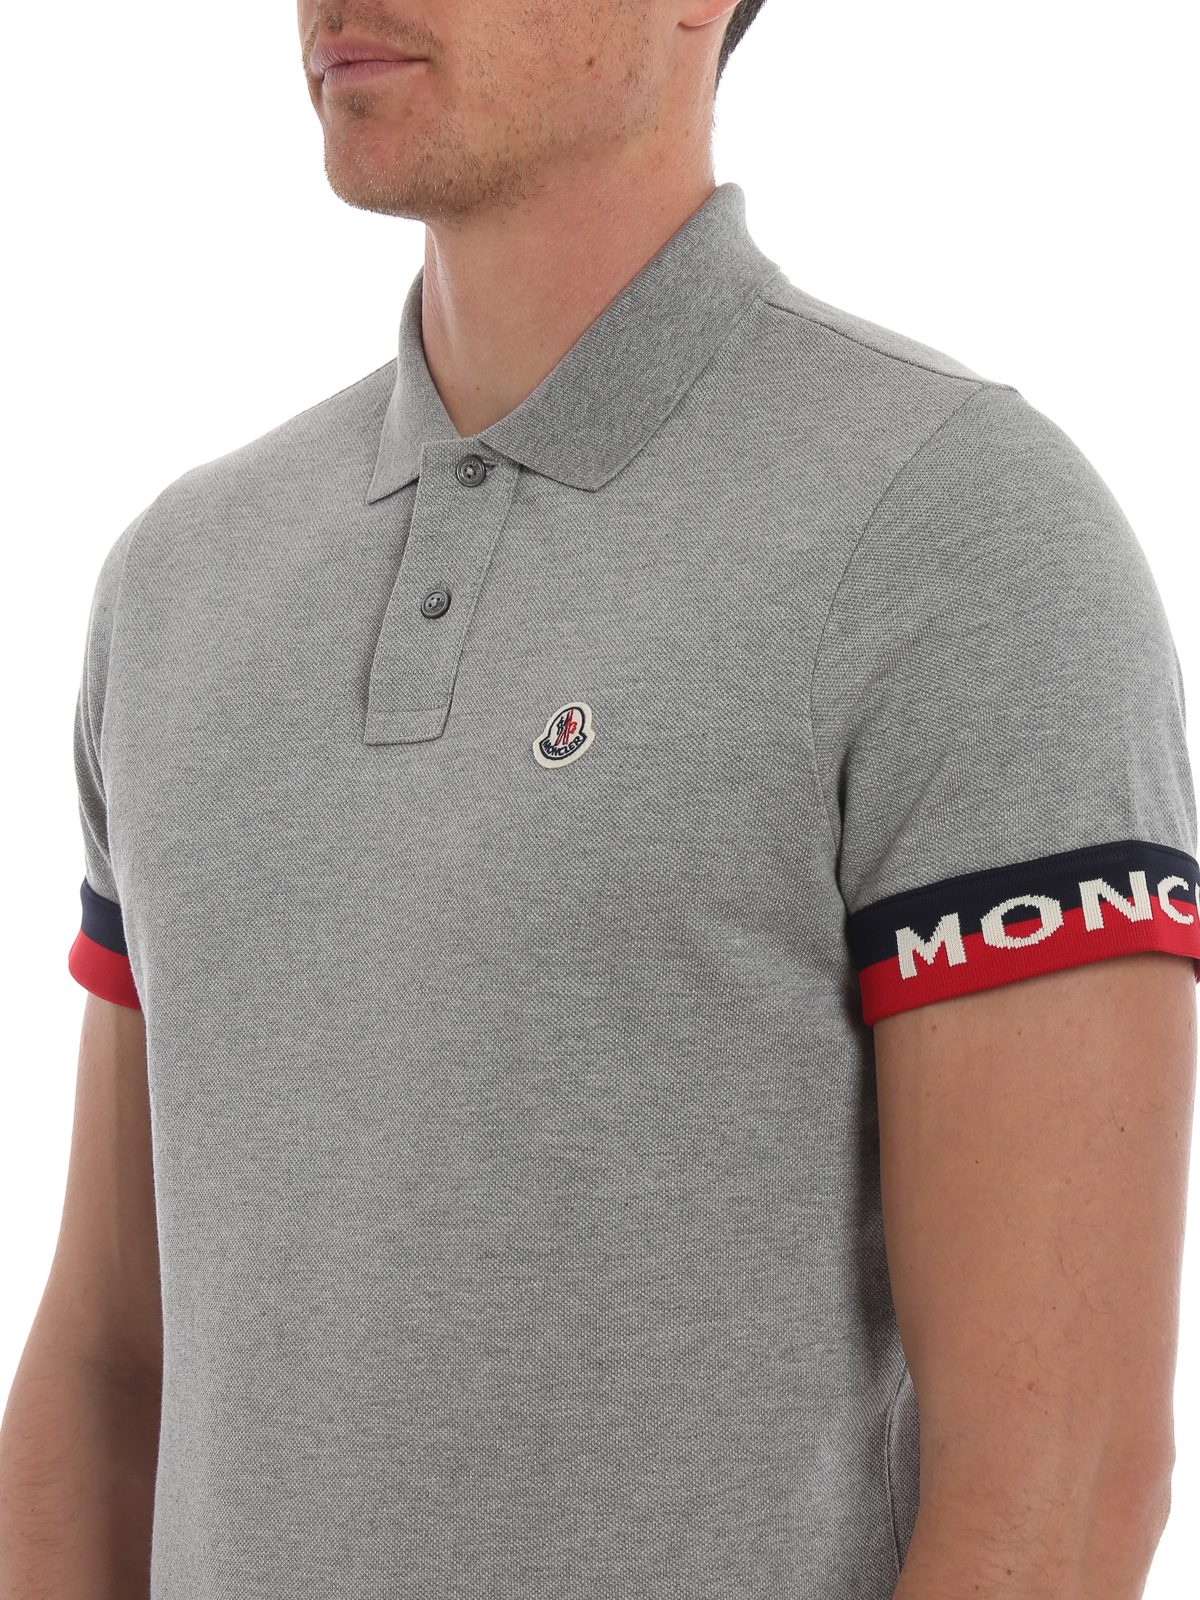 Moncler - Grey pique polo shirt with 